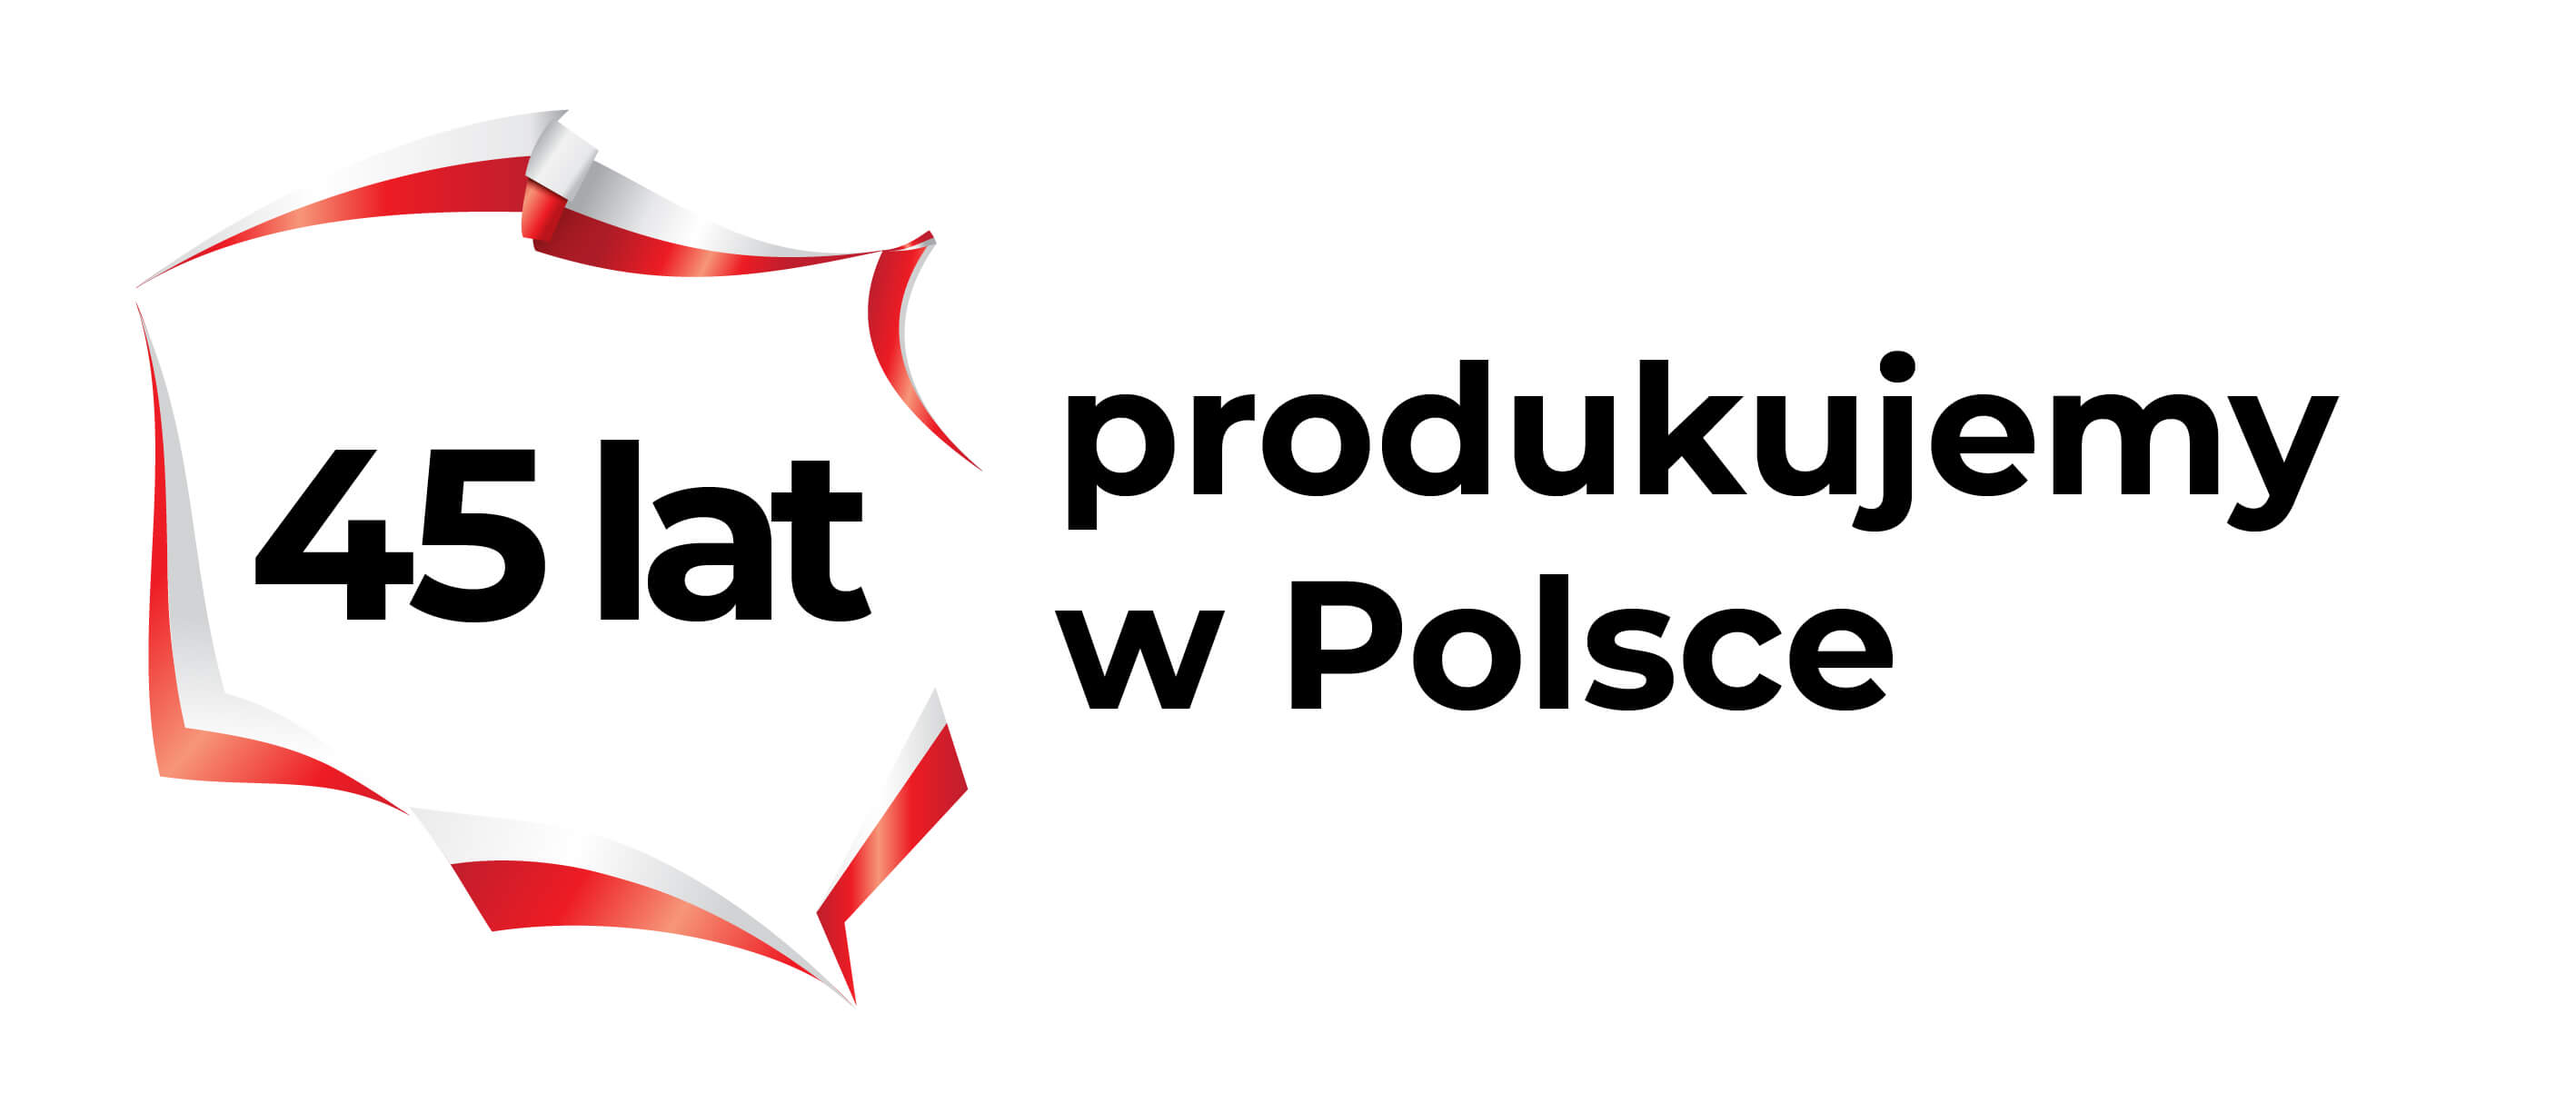 40lat_produkujemy_w_Polsce